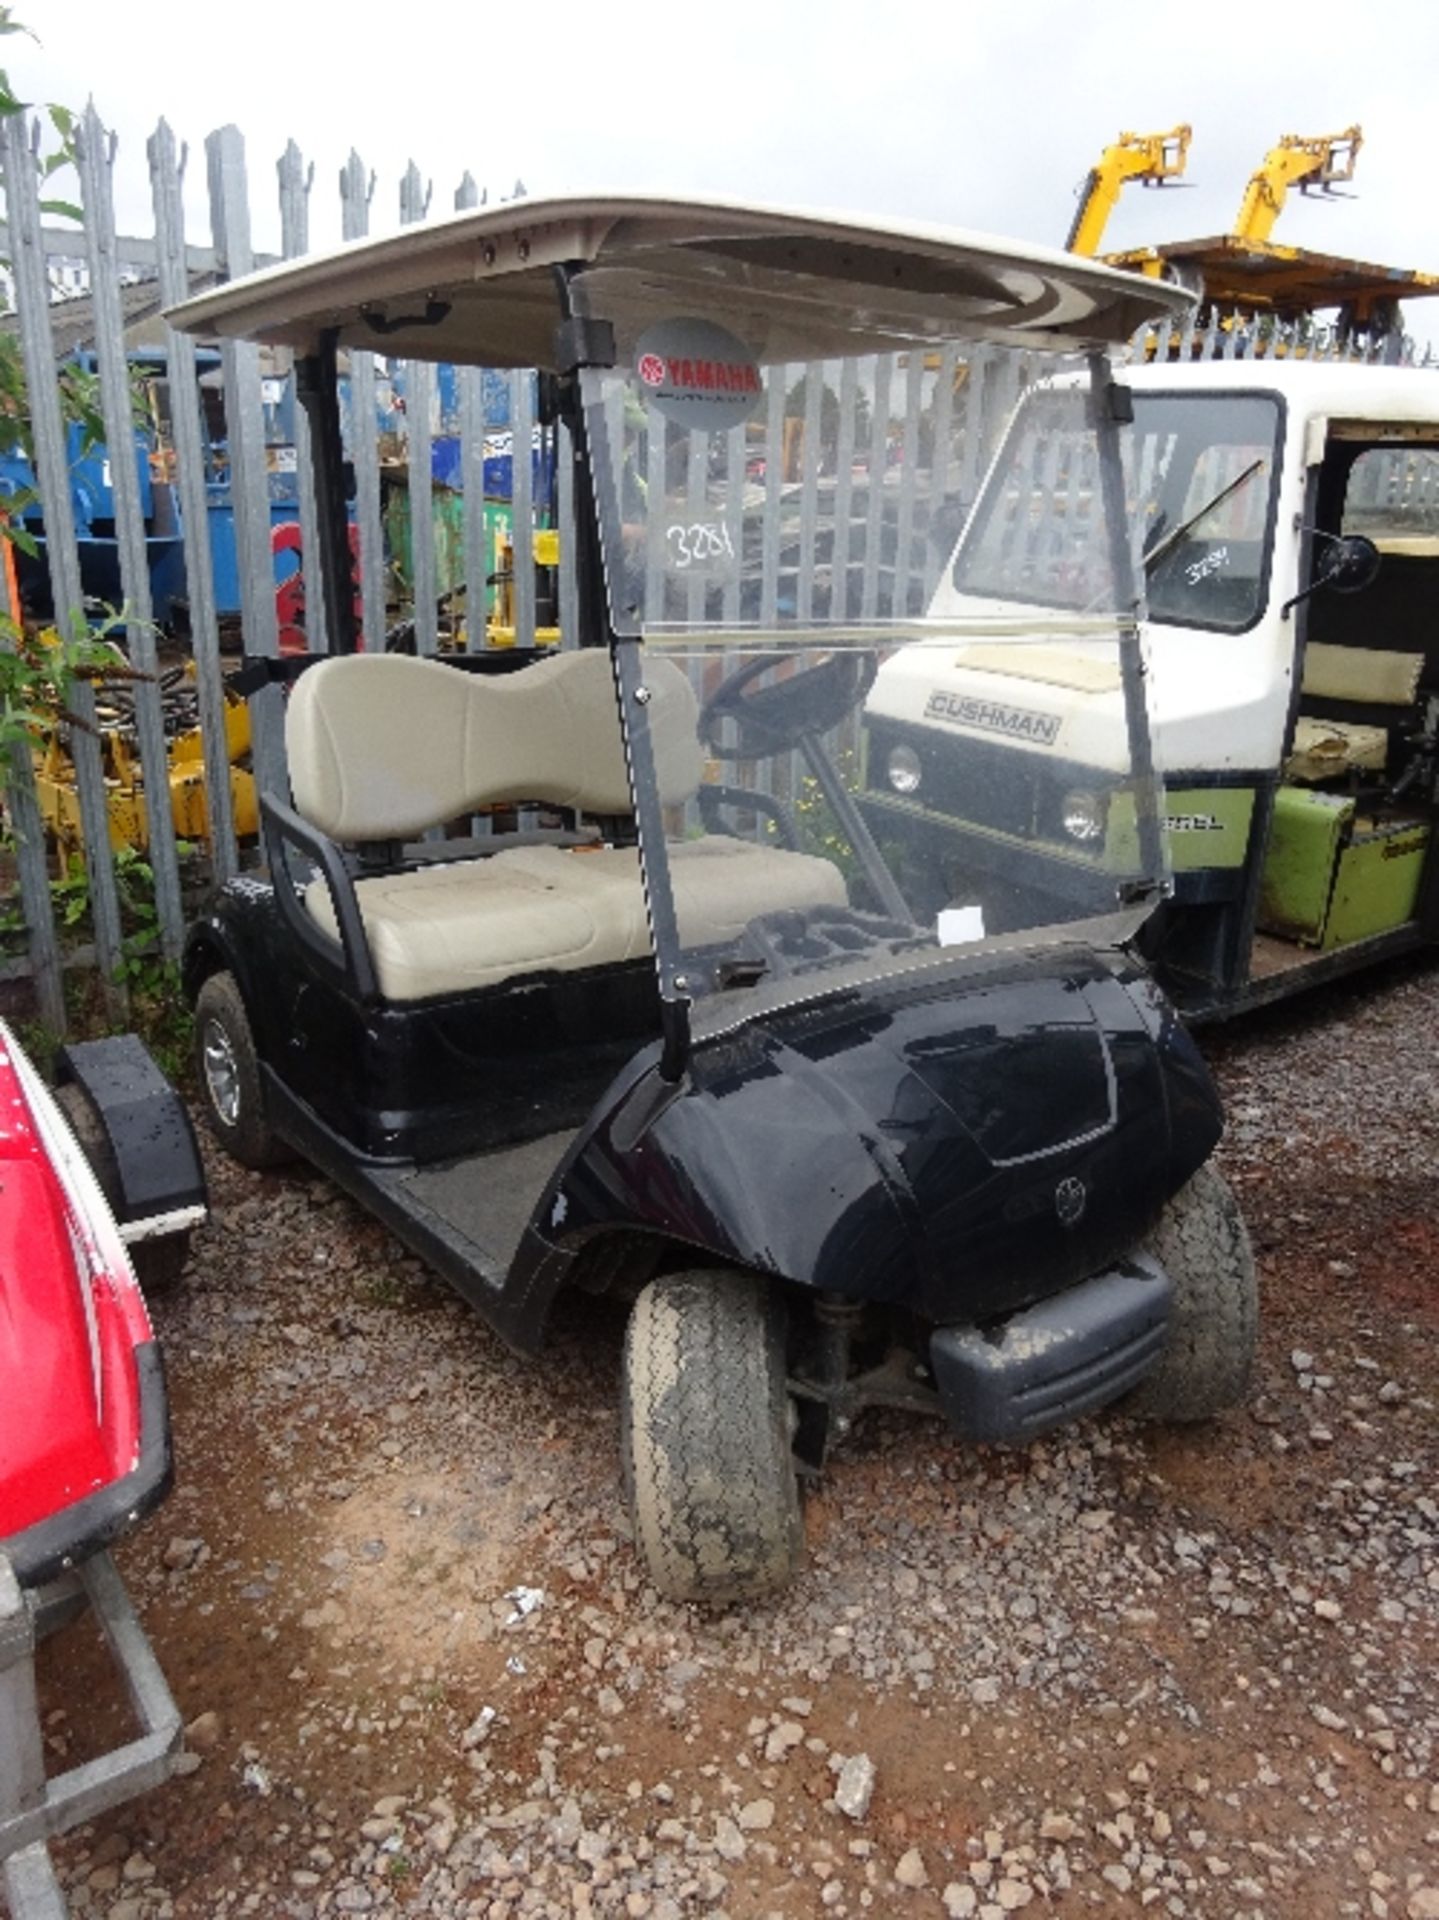 Yamaha electric golf cart (2013)